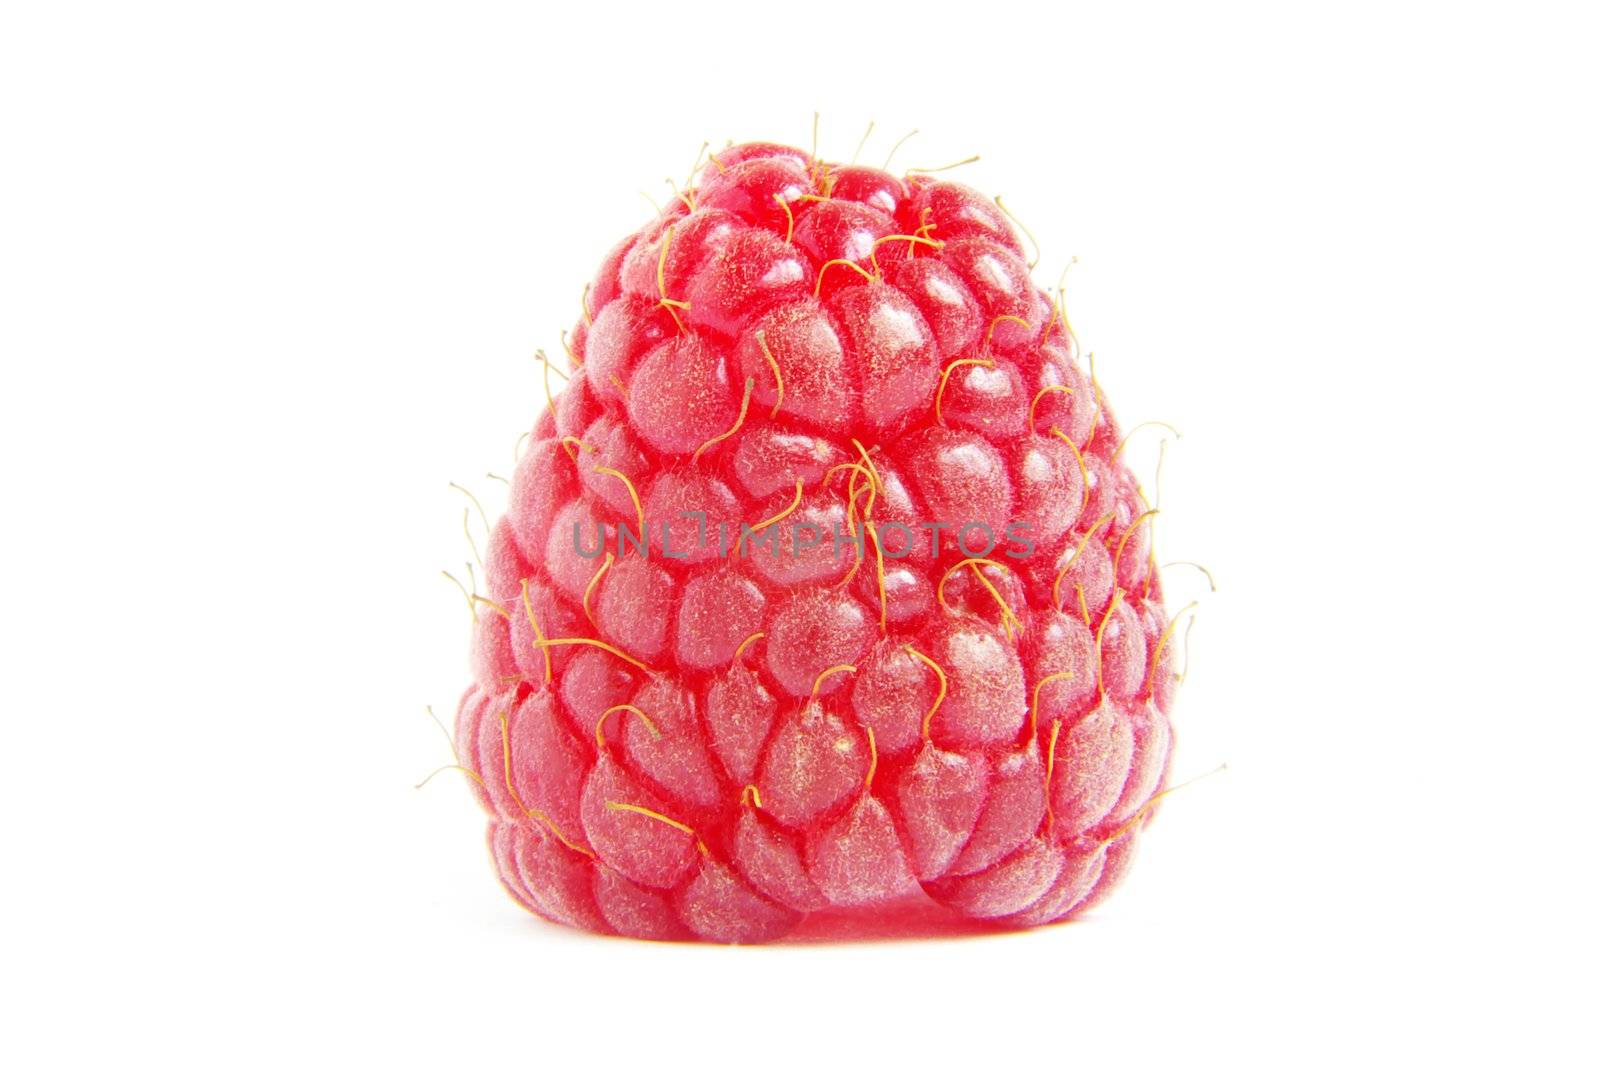  raspberry  by Pakhnyushchyy